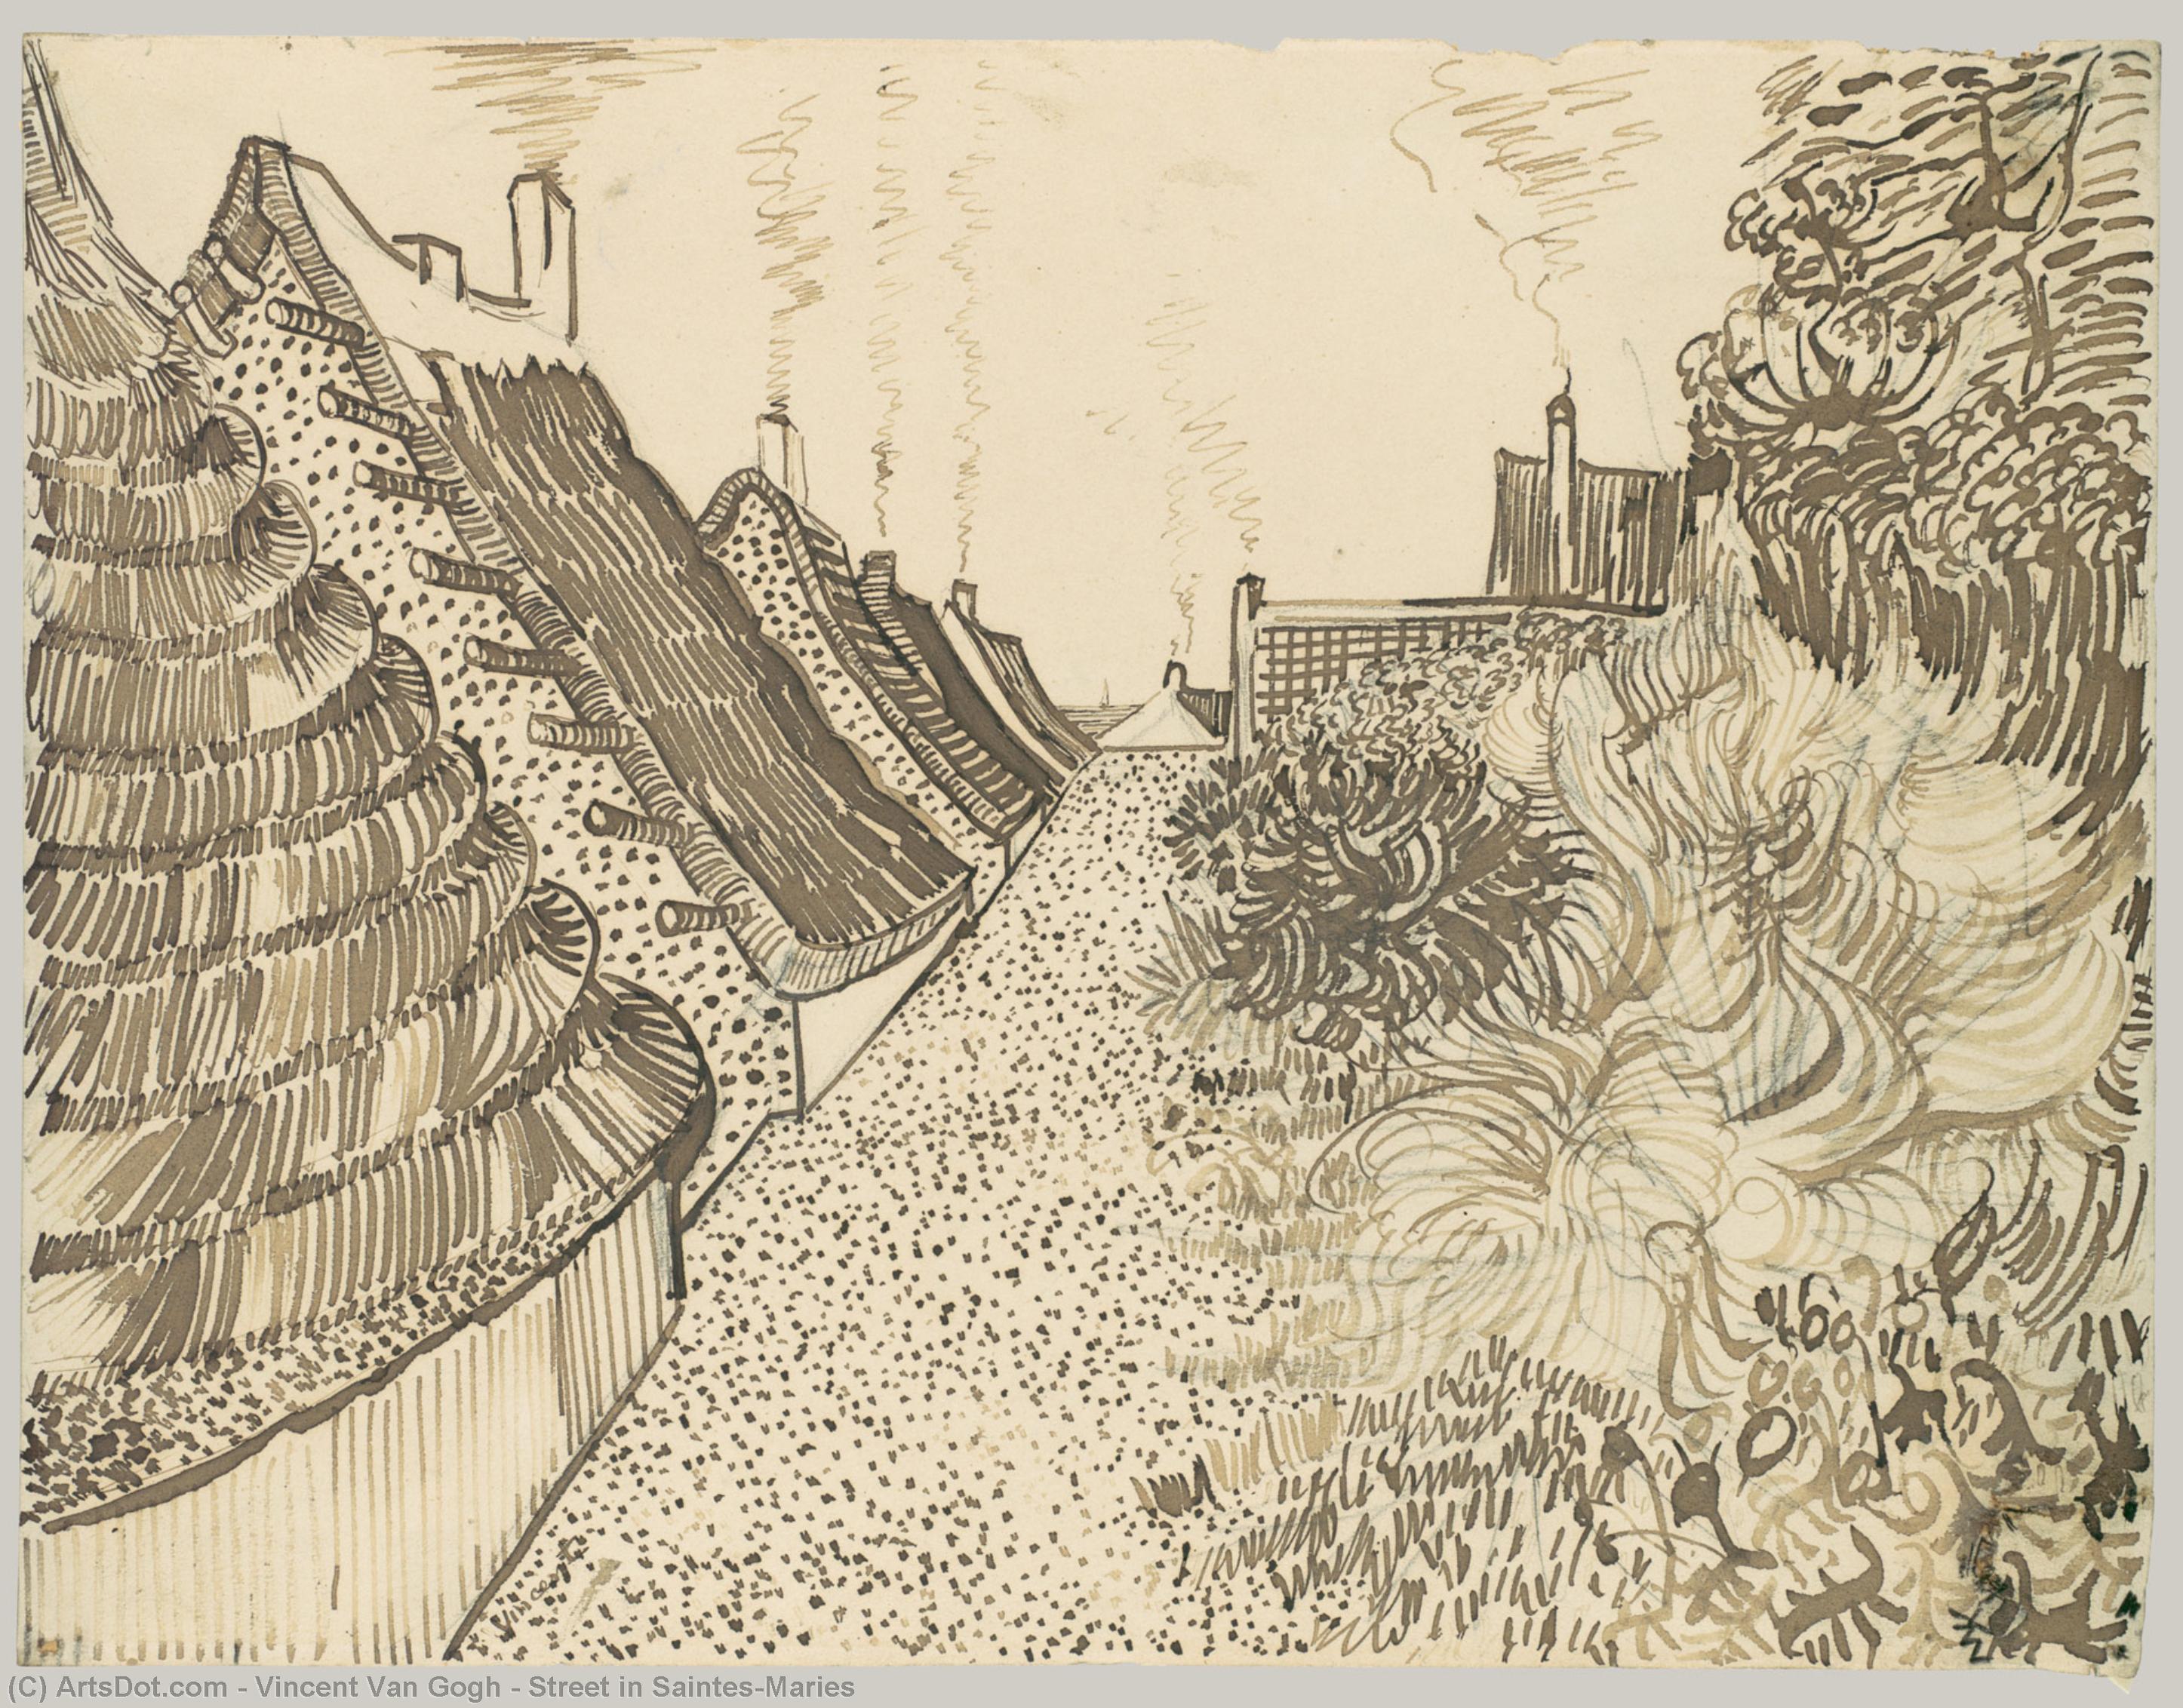 WikiOO.org - Encyclopedia of Fine Arts - Lukisan, Artwork Vincent Van Gogh - Street in Saintes-Maries